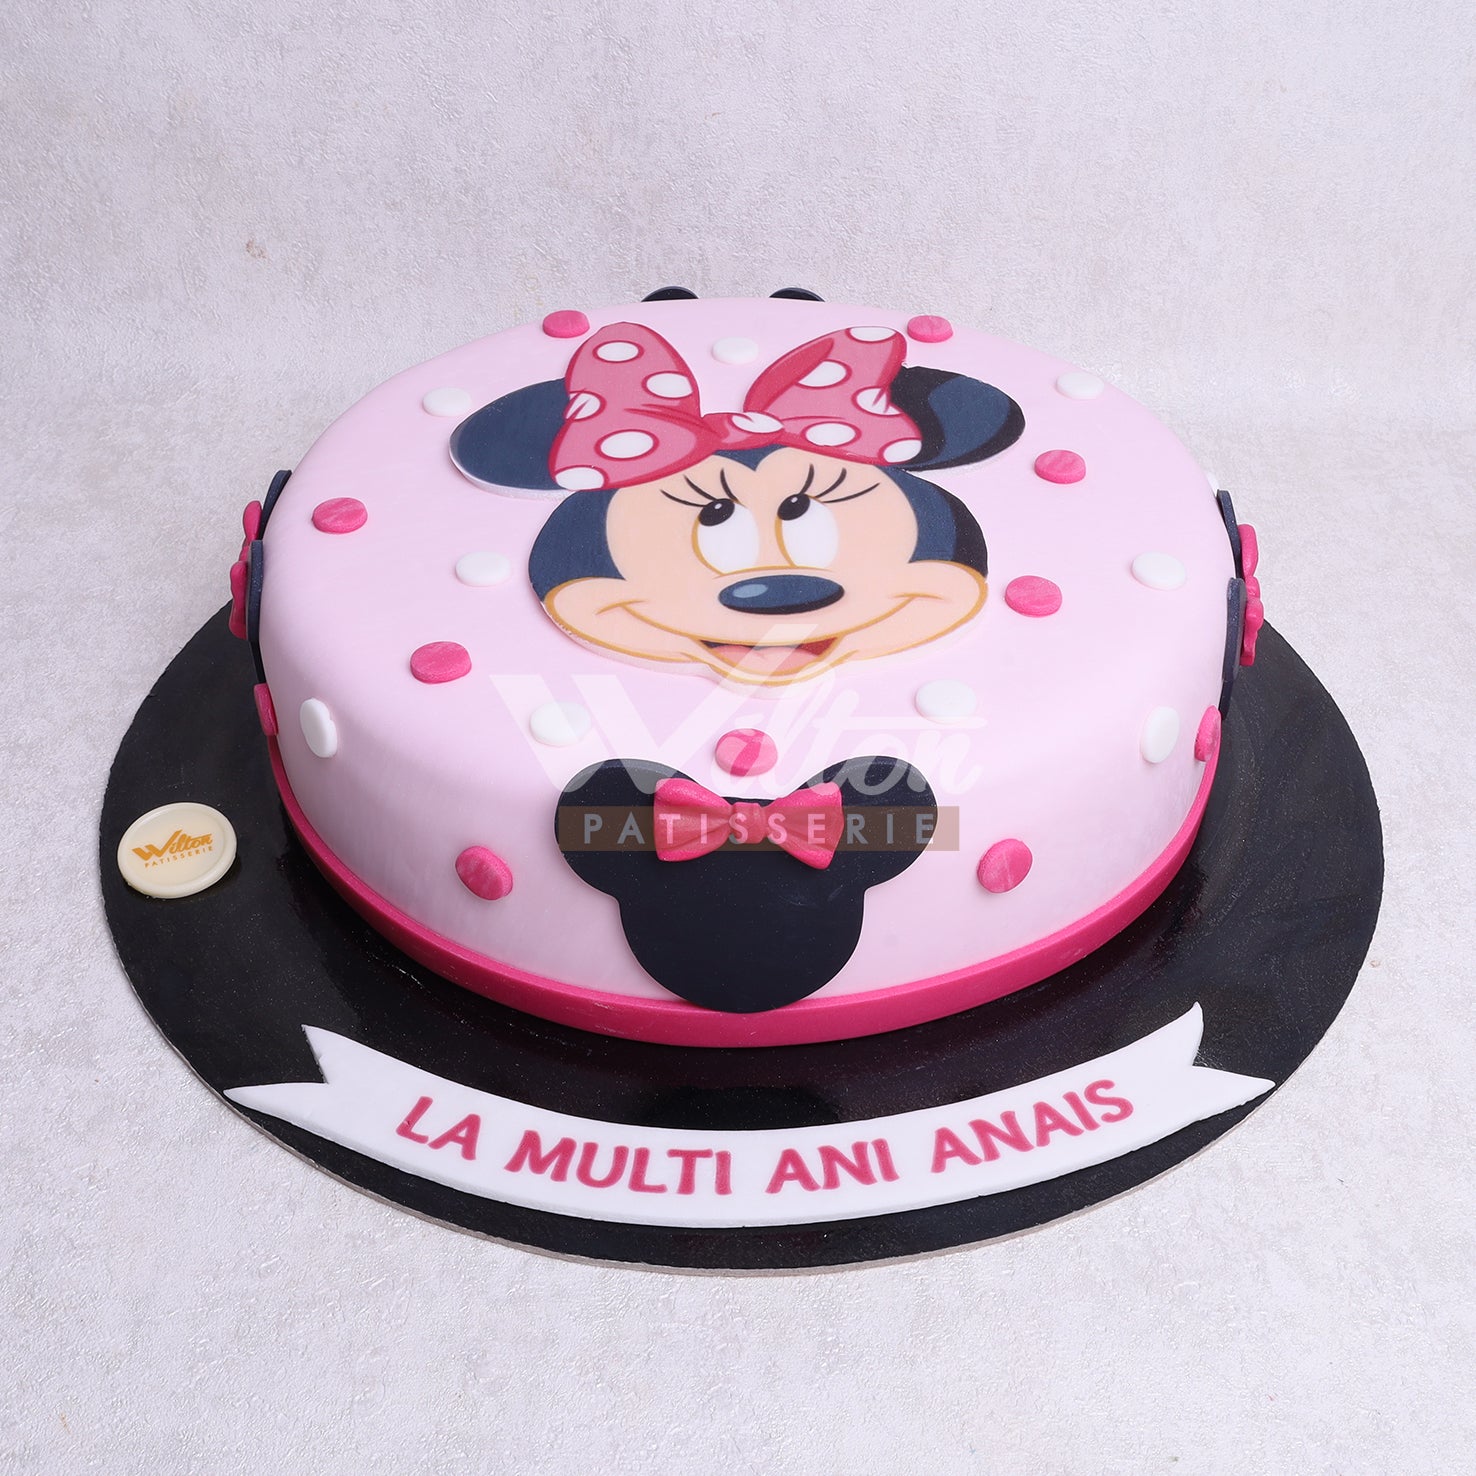 Minnie Mouse Cake - Wilton